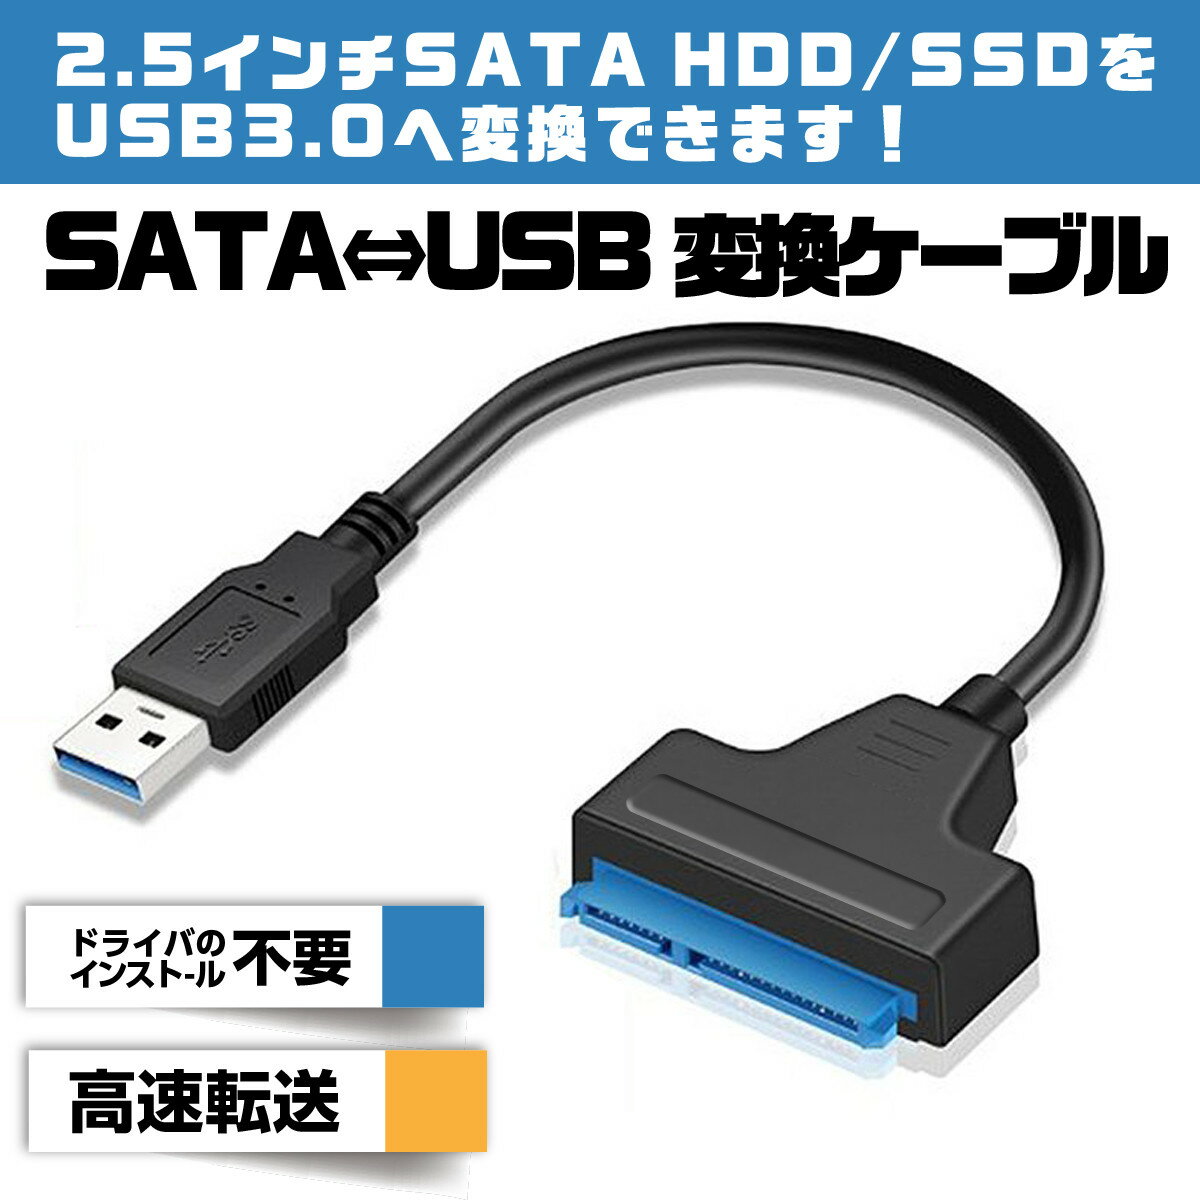 【送料無料】SATA USB 変換ケーブル SATAケーブル